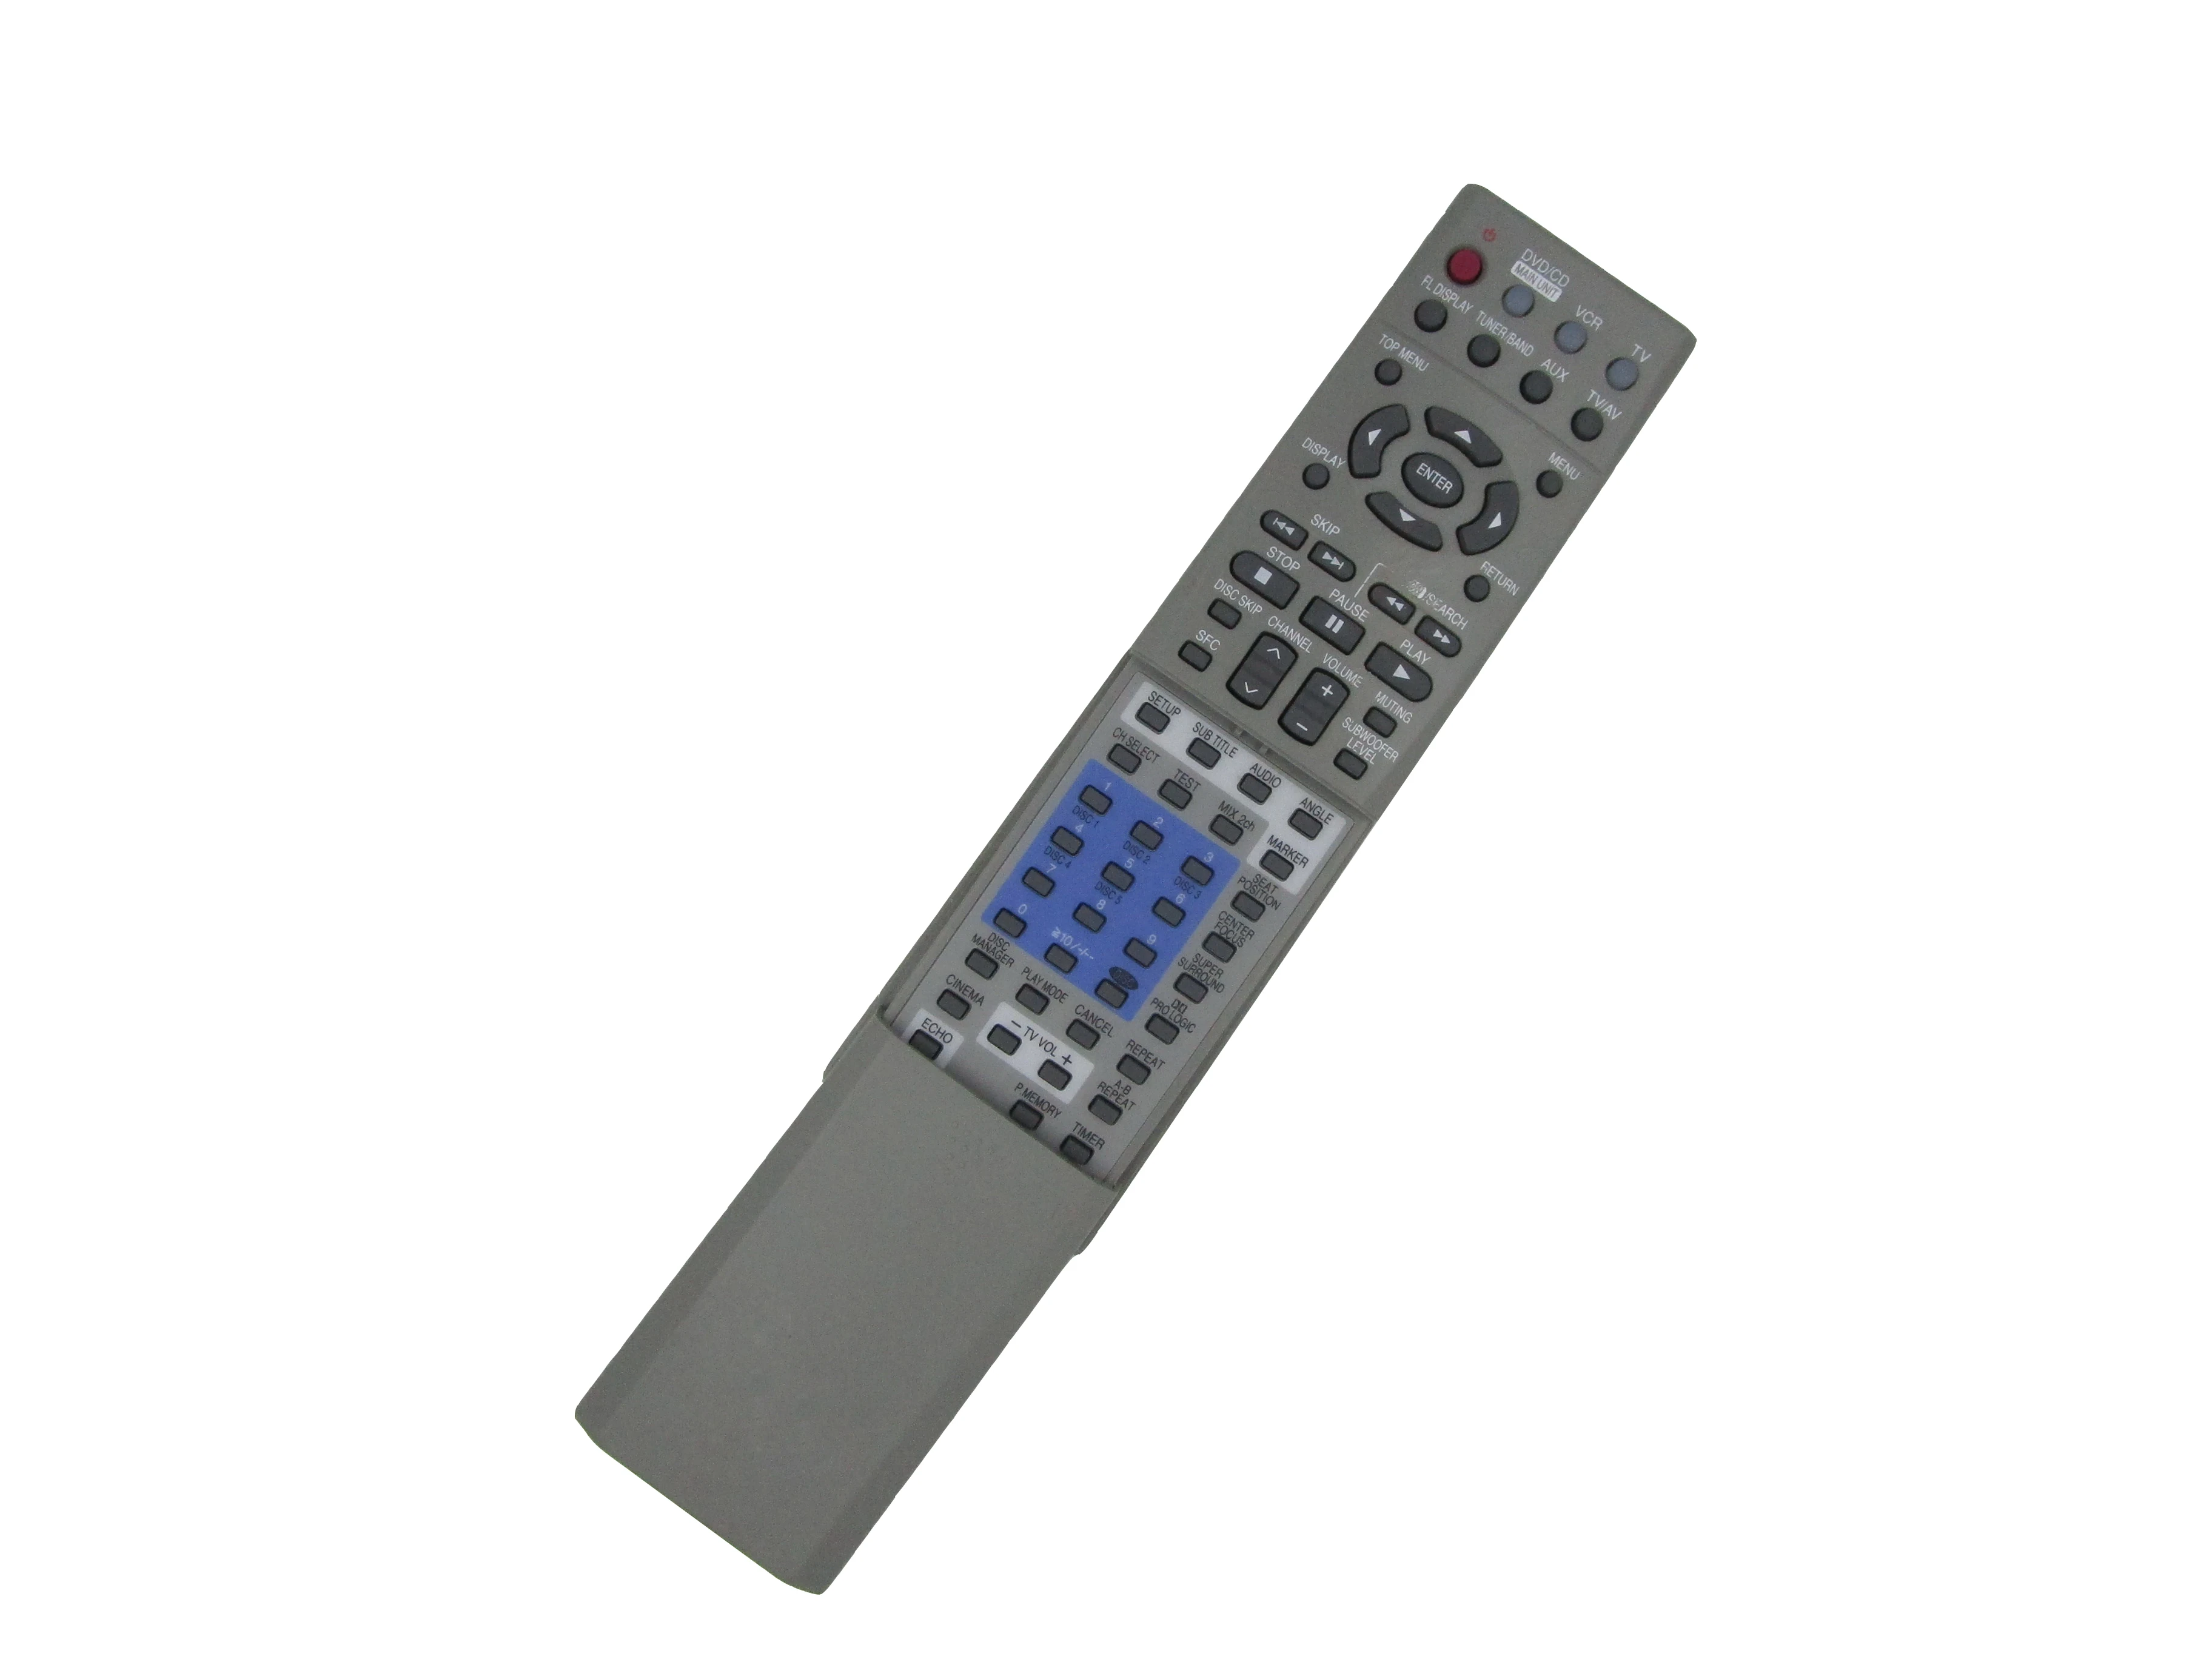 Telecomanda Pentru Panasonic EUR7502XD0 EUR7722XG0 EUR7502X10 SA-HT680 SC-HT680 SA-HT67 SA-HT70 DVD, Sistem Home Theater